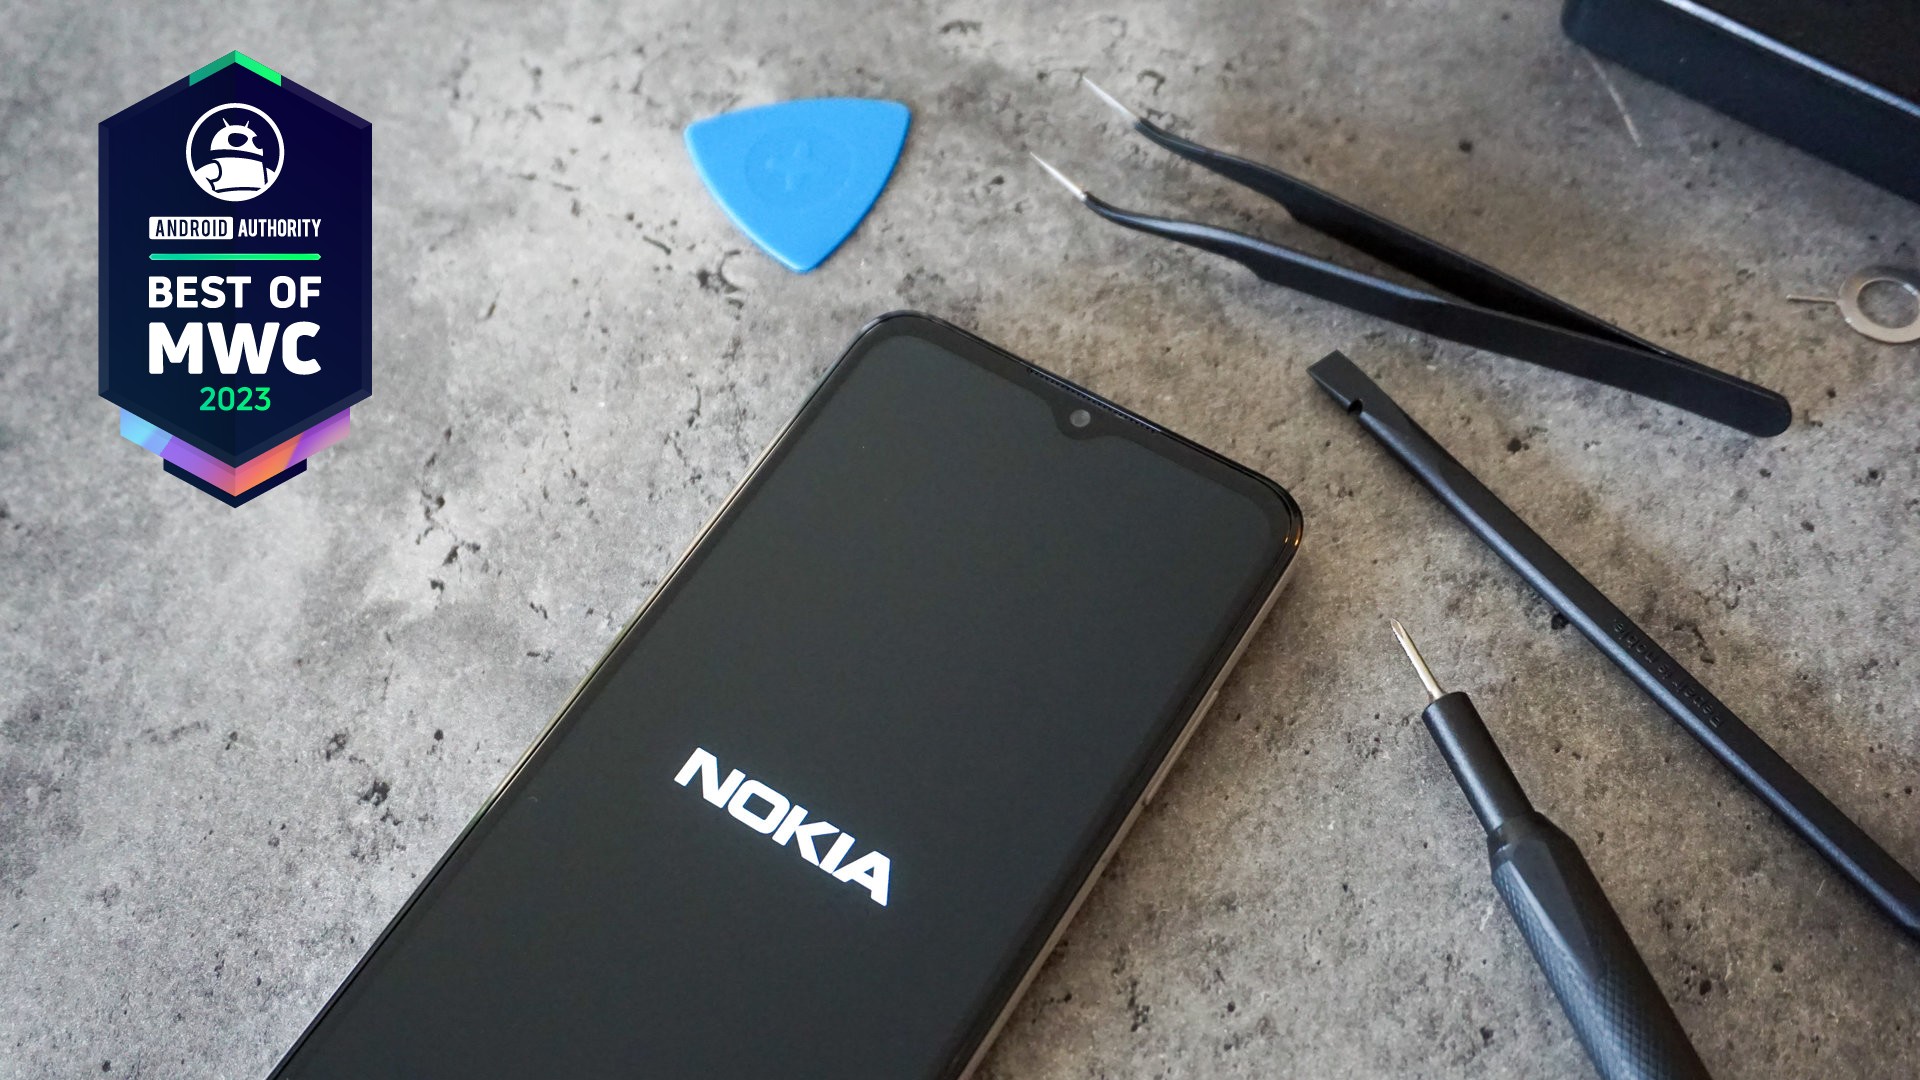 Remplacement de la batterie Nokia g22 ifixit meilleur de mwc 2023